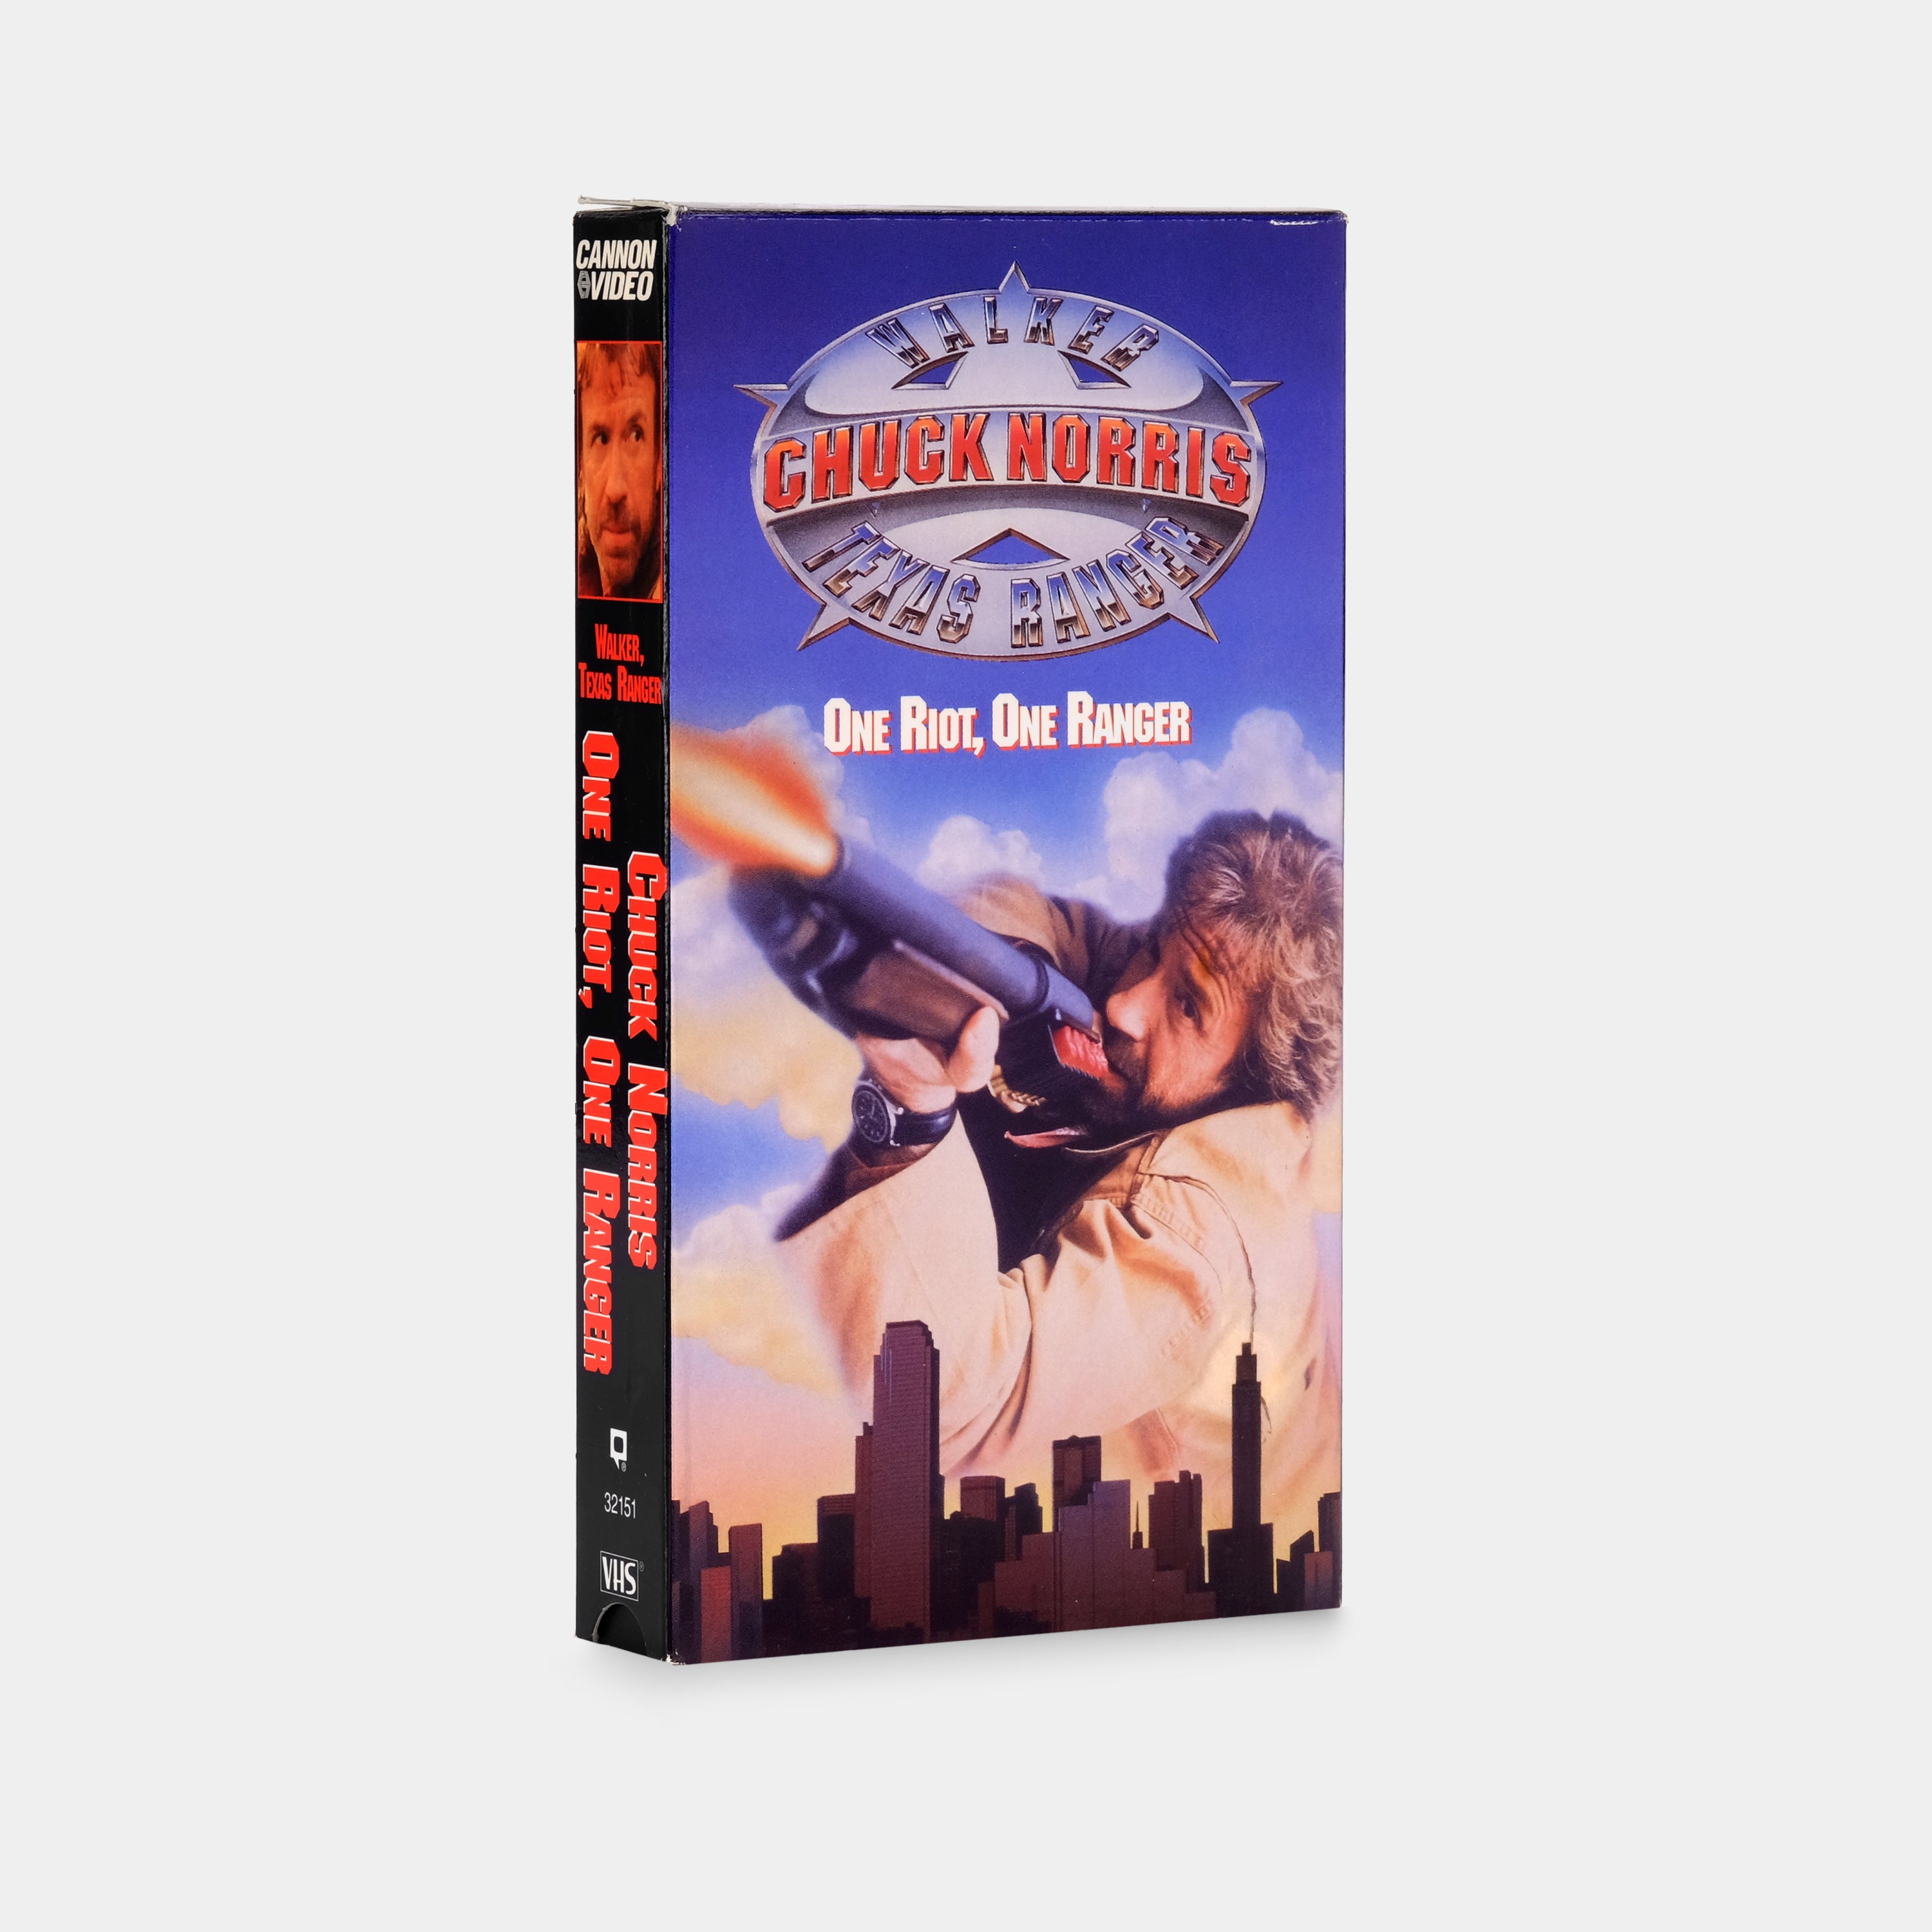 Walker, Texas Ranger: One Riot, One Ranger VHS Tape